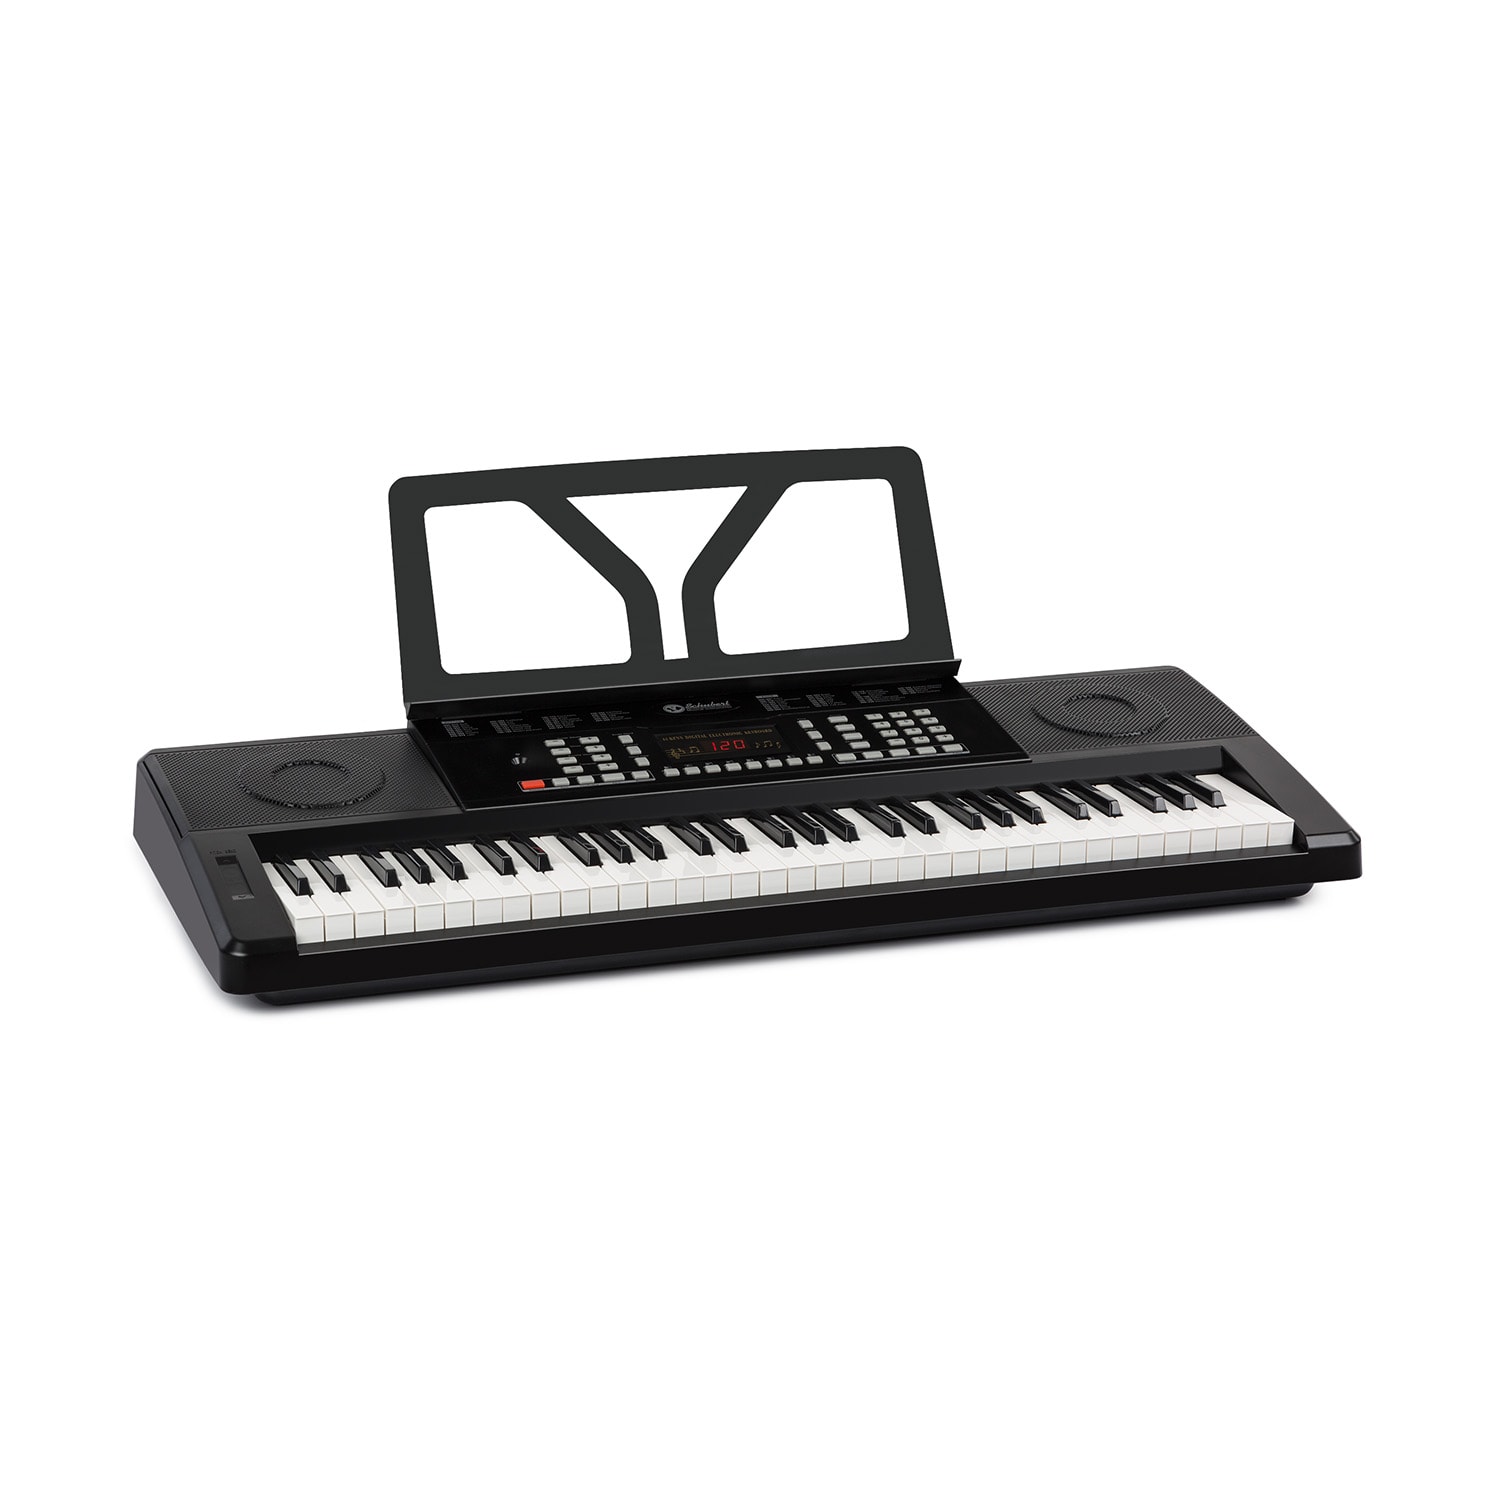 SCHUBERT Etude 61 MK II, claviatură, 61 taste standard, 300 sunete/ritmuri, neagră